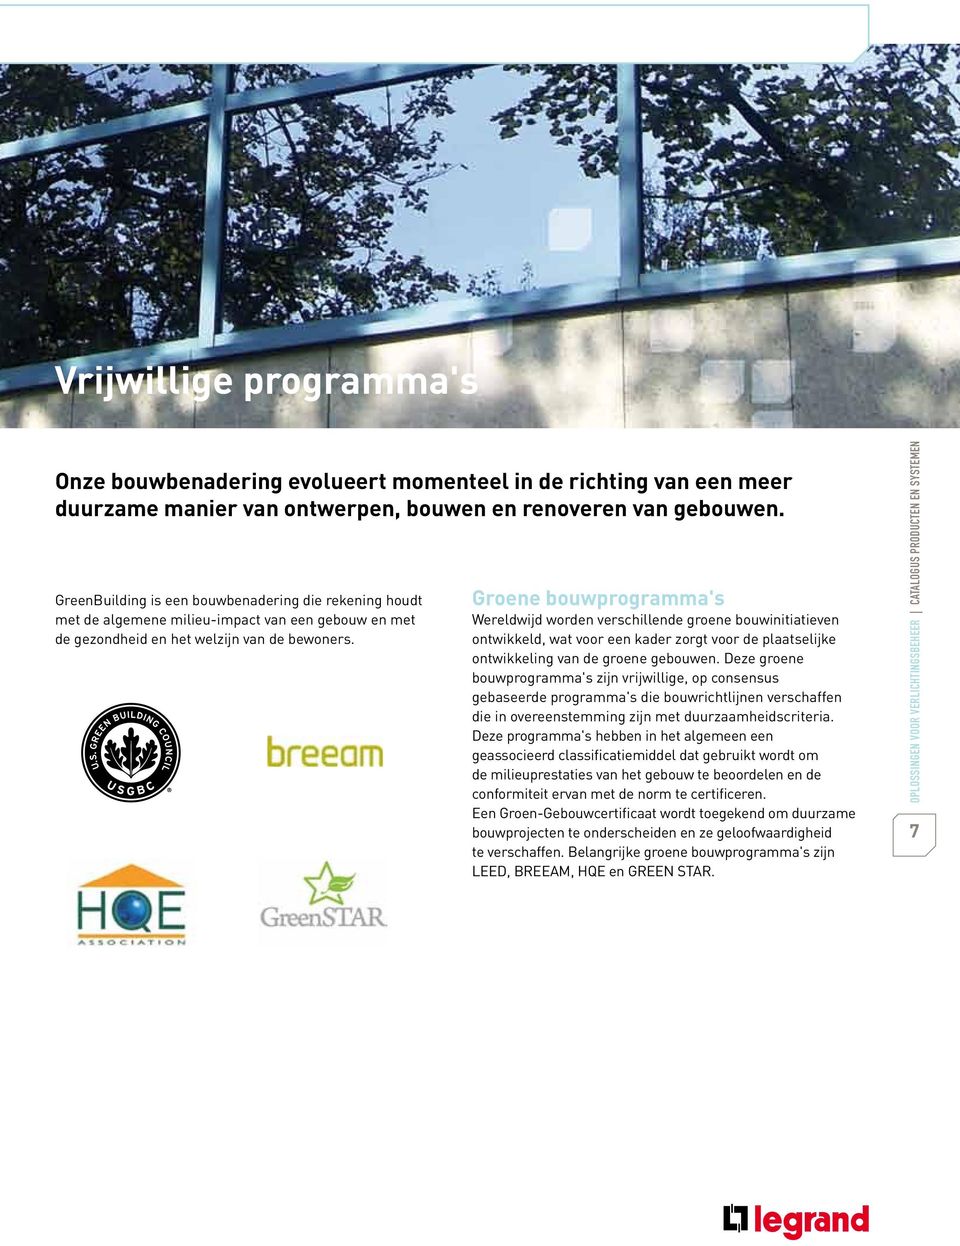 Groene bouwprogramma's Wereldwijd worden verschillende groene bouwinitiatieven ontwikkeld, wat voor een kader zorgt voor de plaatselijke ontwikkeling van de groene gebouwen.